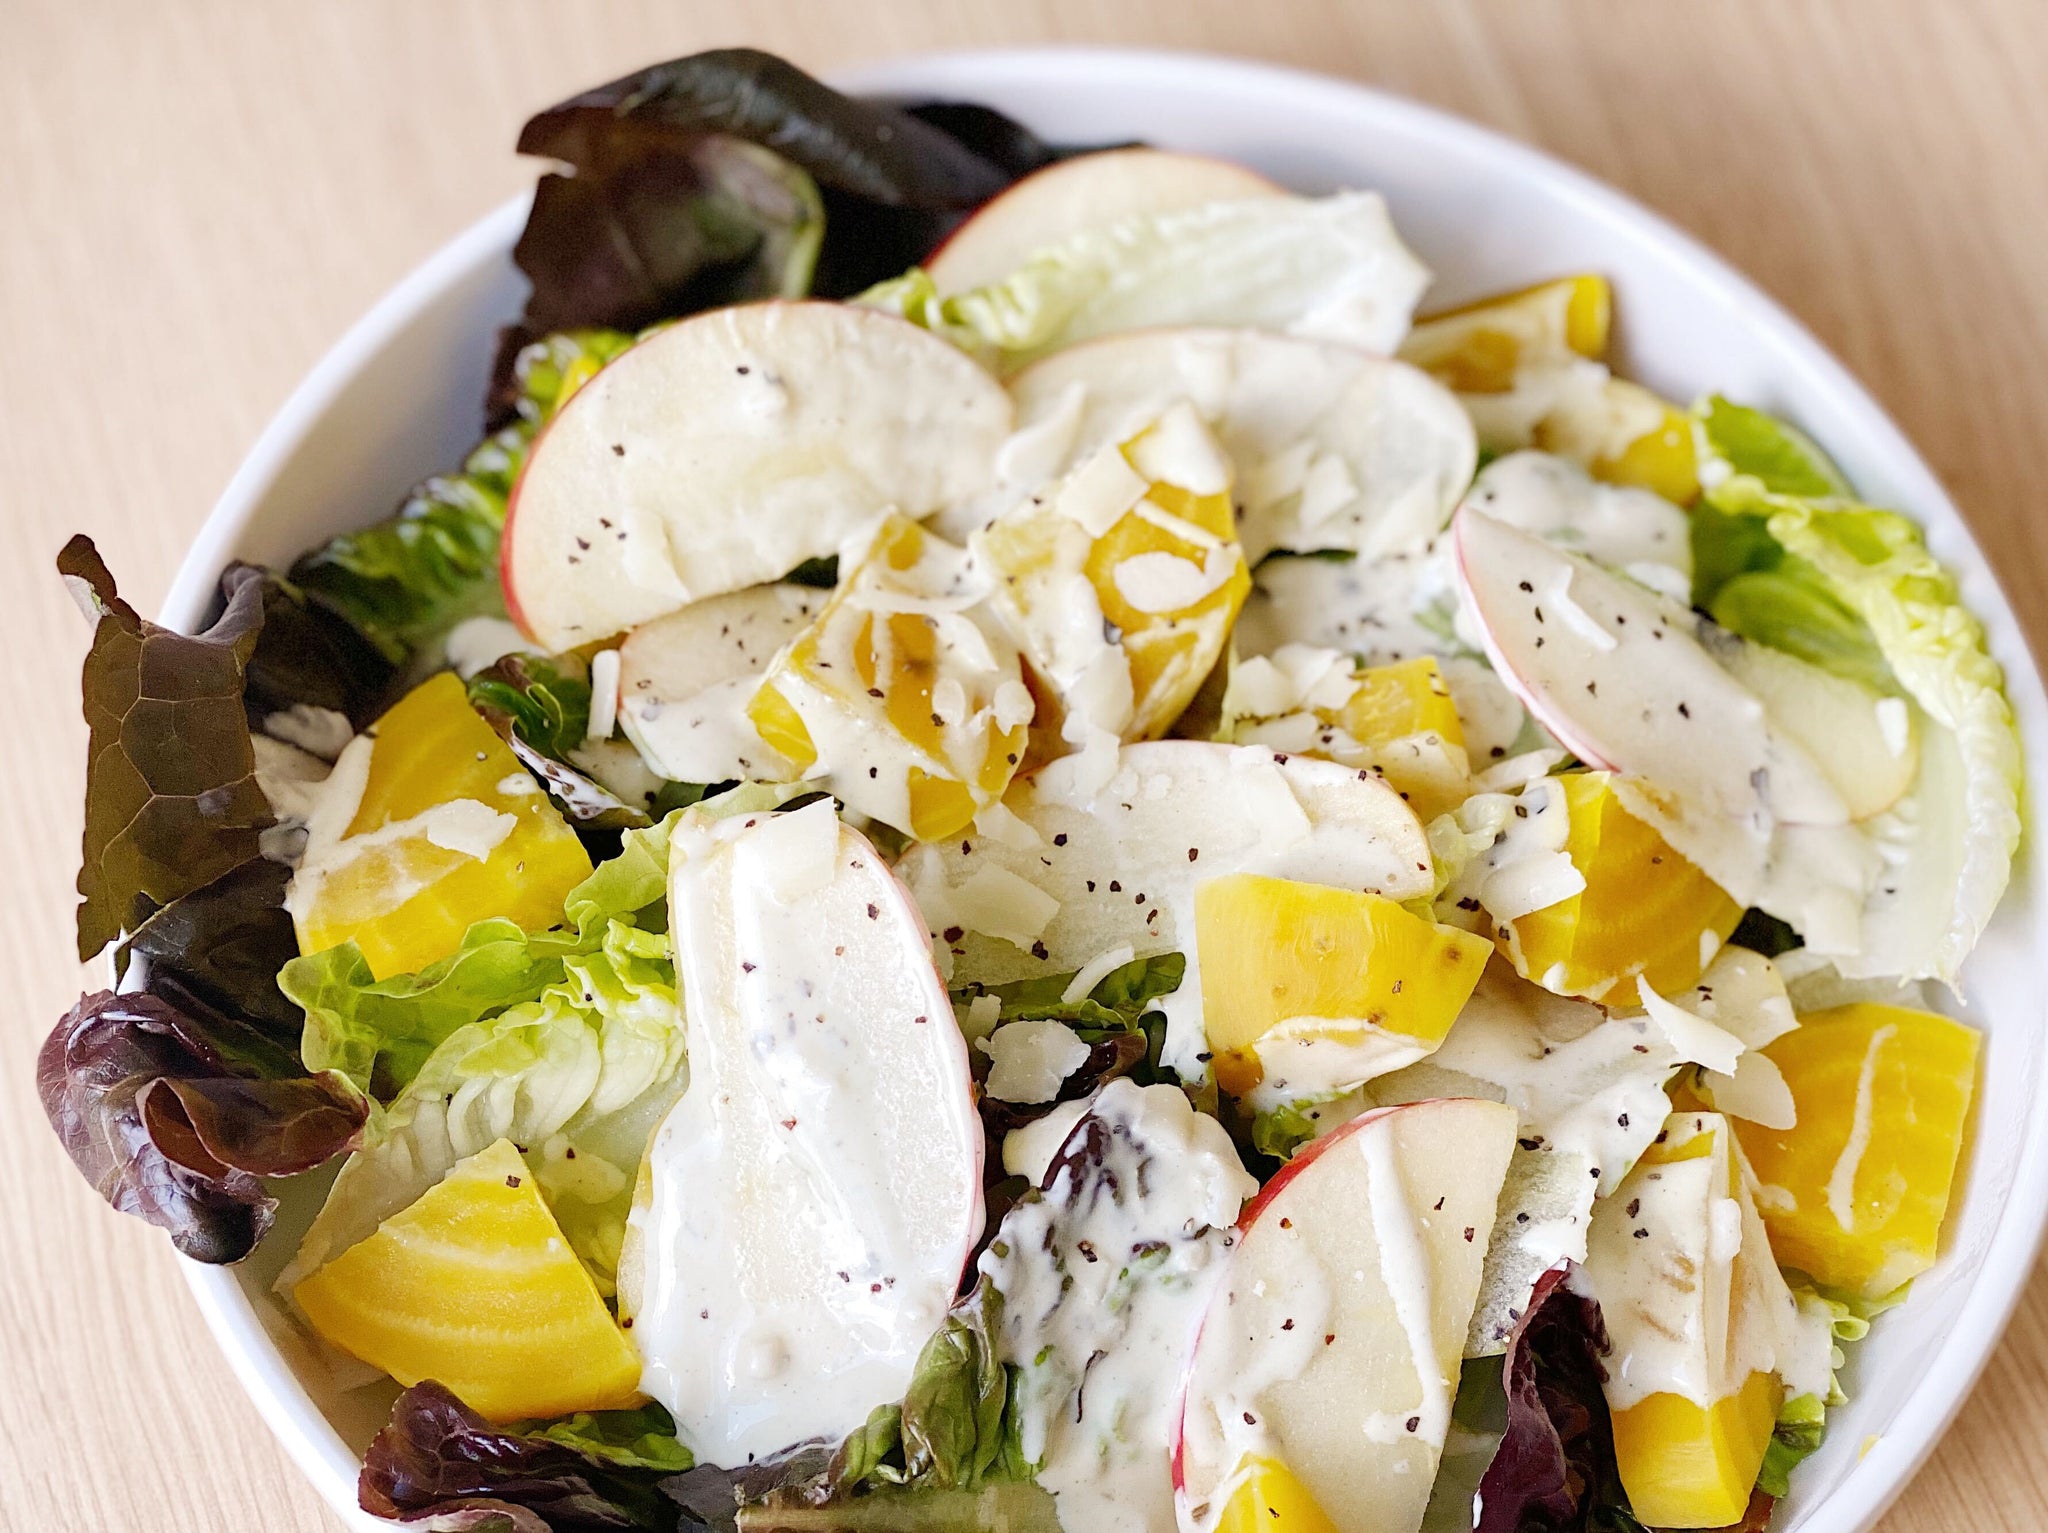 Summer Golden Beet Salad with Lemon White Balsamic Vinaigrette